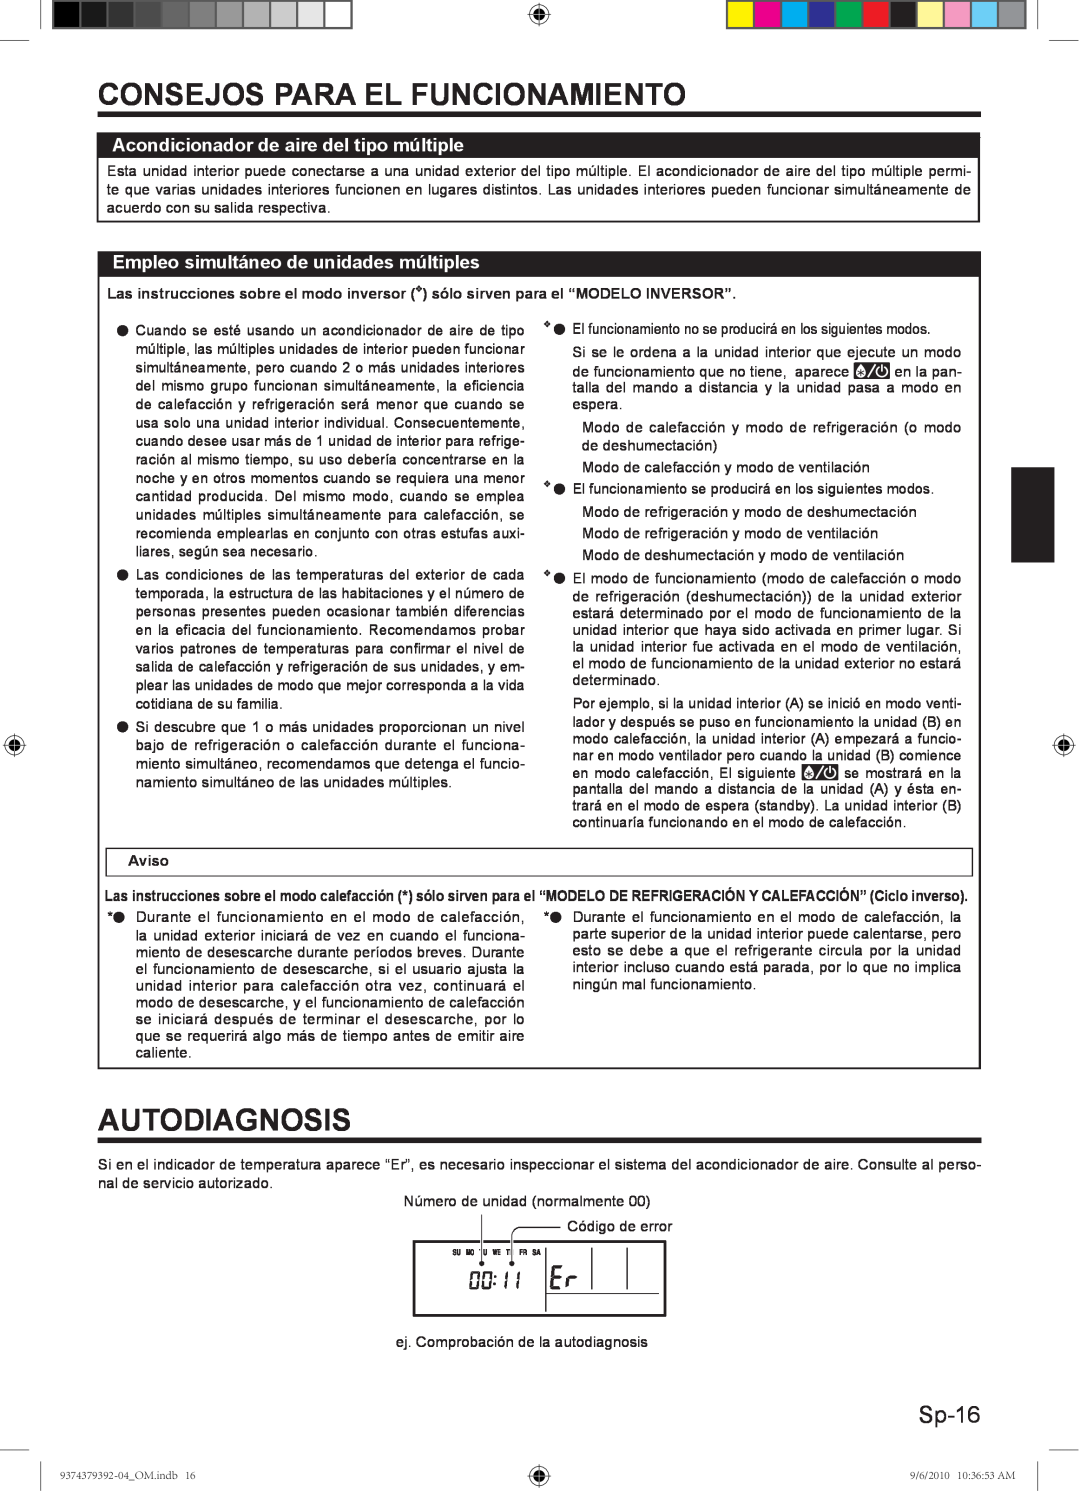 Fujitsu 9374379392-04 Autodiagnosis, Sp-16, Consejos Para El Funcionamiento, Acondicionador de aire del tipo múltiple 